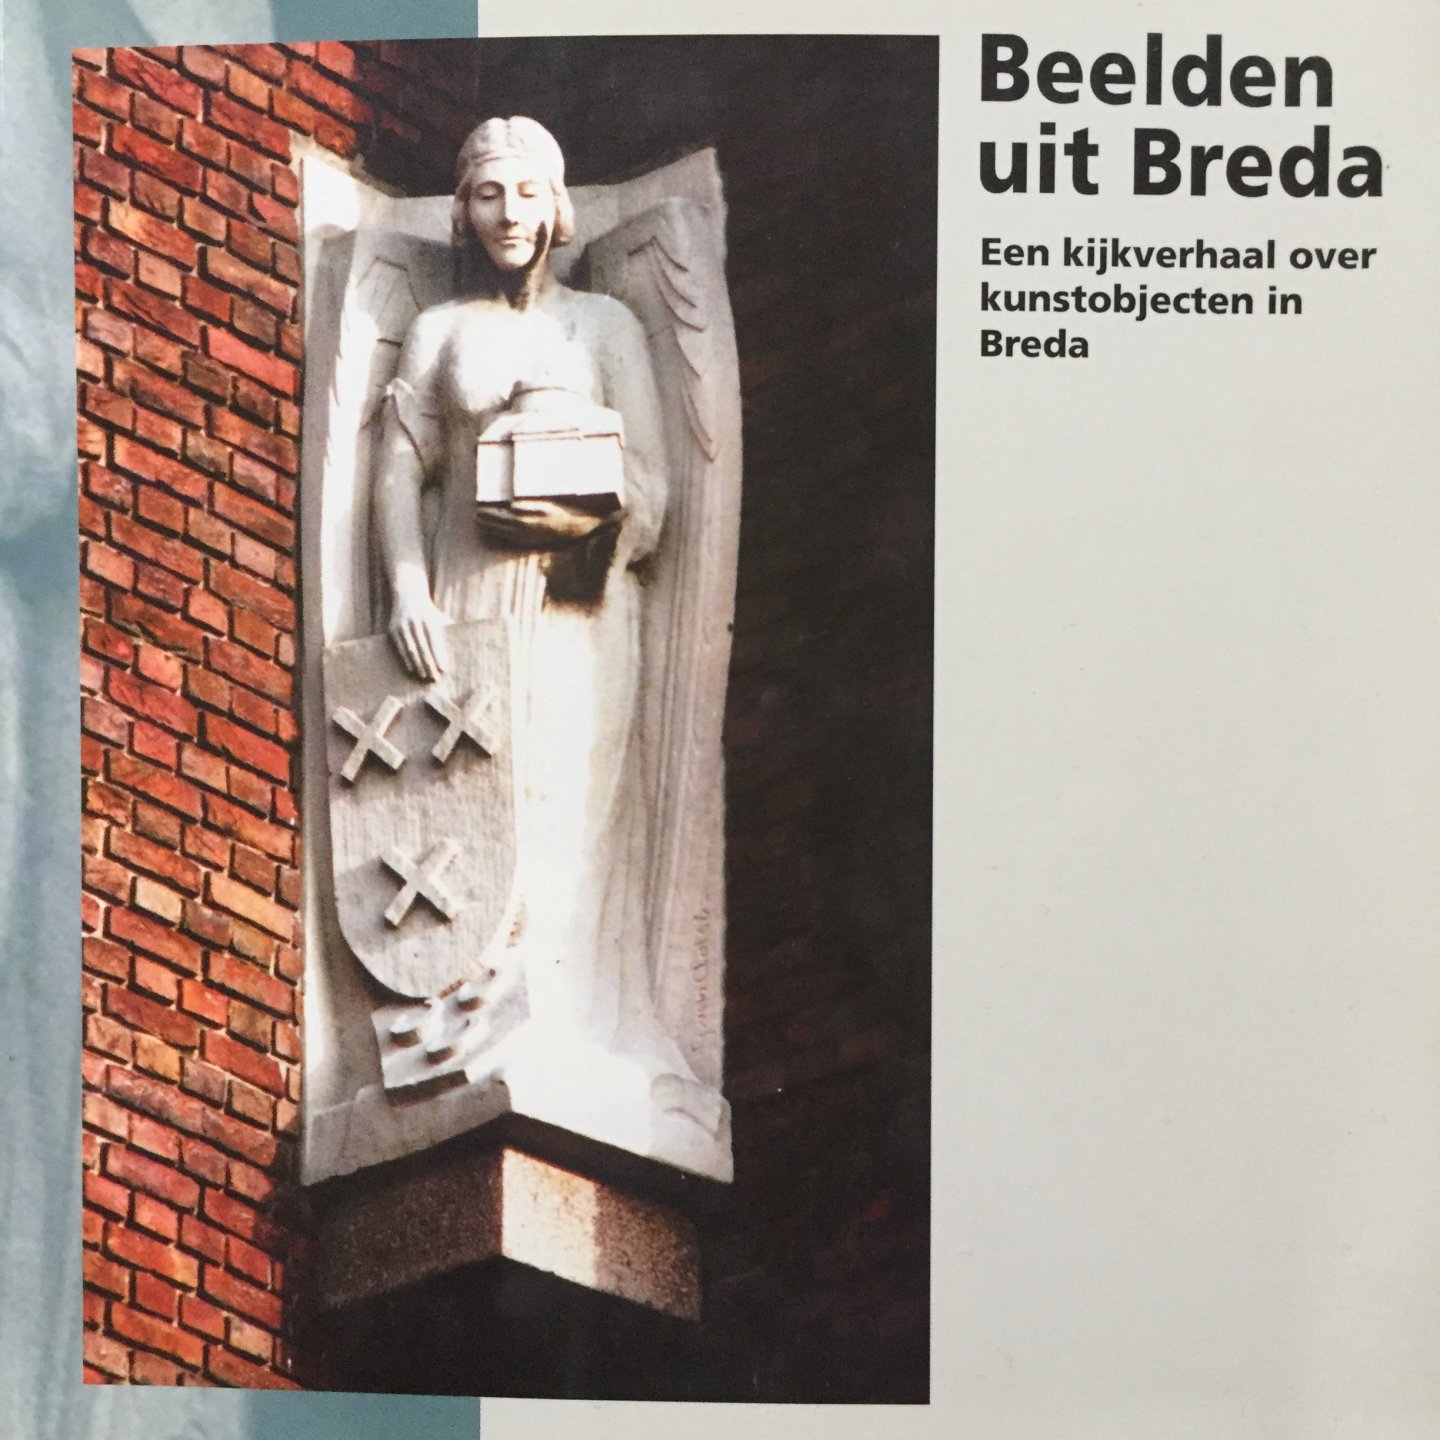 Beek, Adriaan van.   Gurp, Johan van. (Foto's) - Beelden uit Breda. Een kijkverhaal over kunstobjecten in Breda.